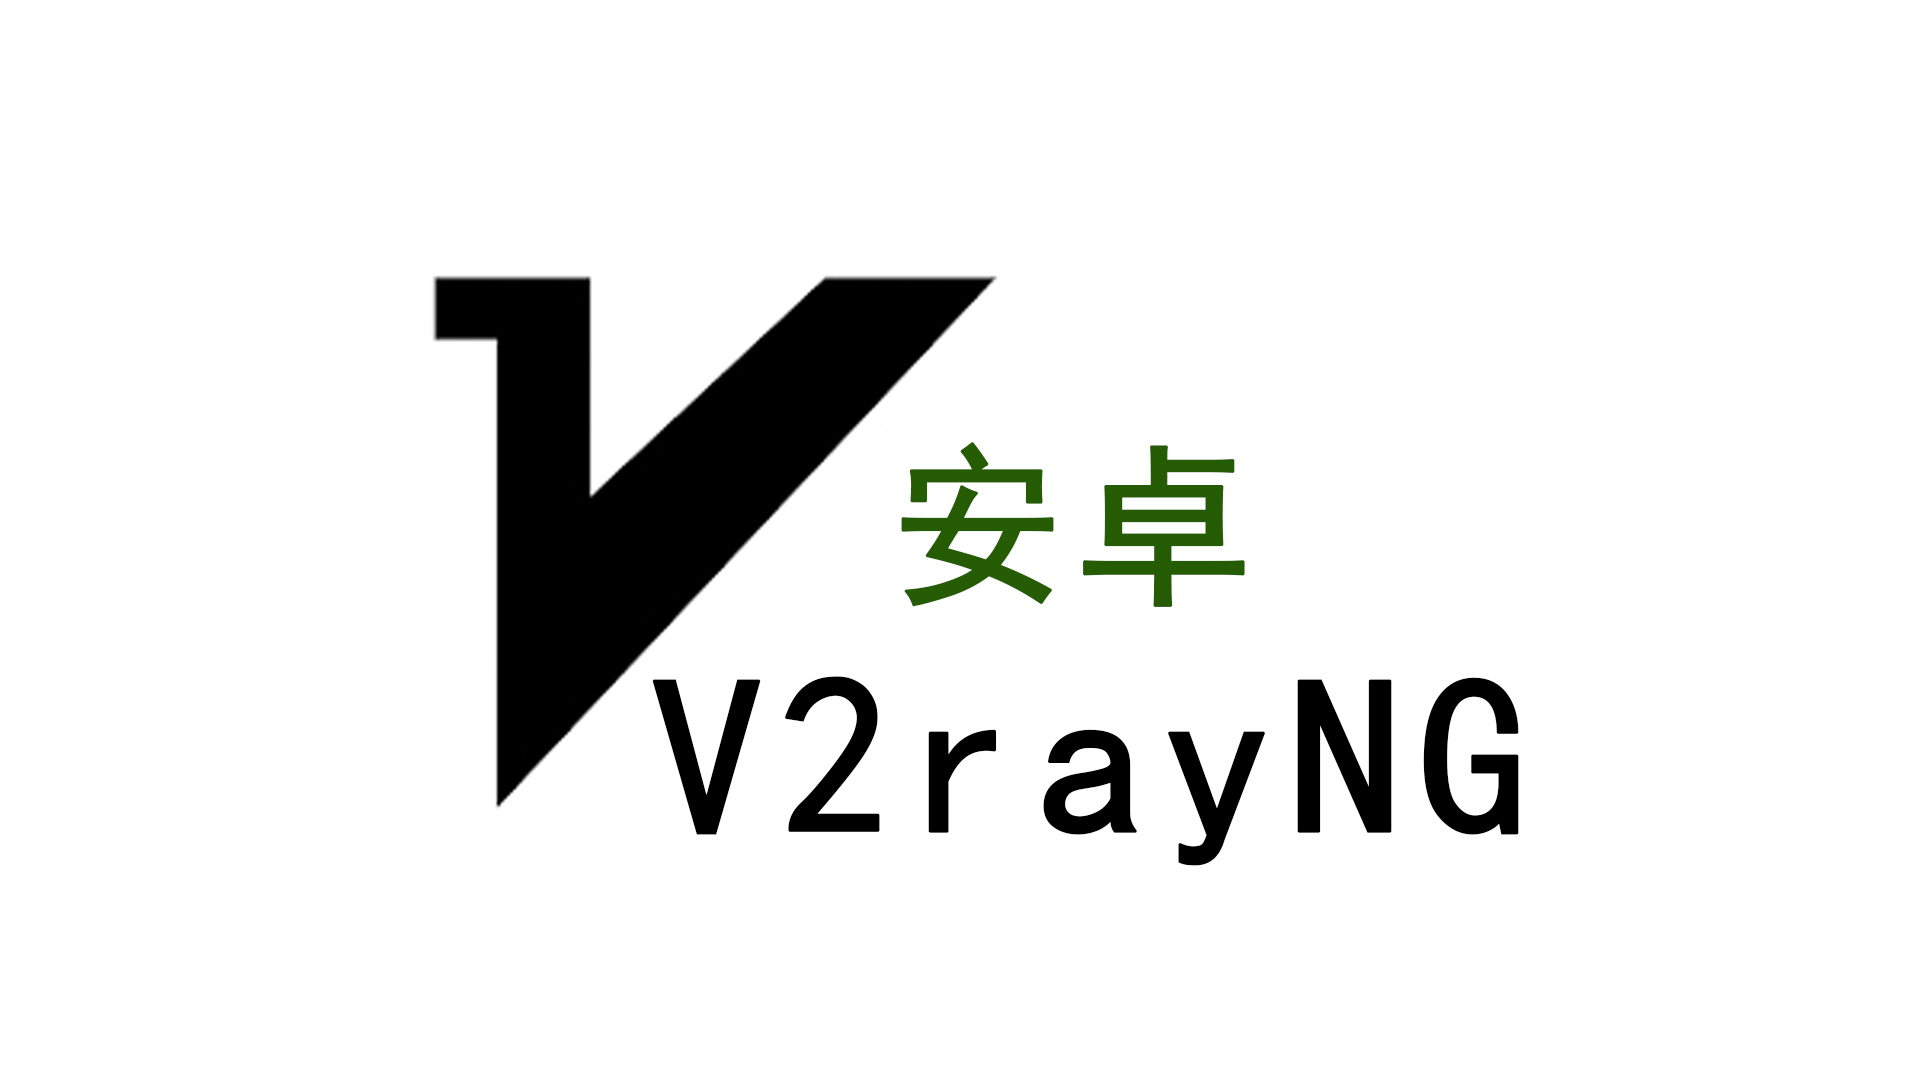 科学工具V2Ray安卓客户端 V2RayNG下载/安装/配置教程